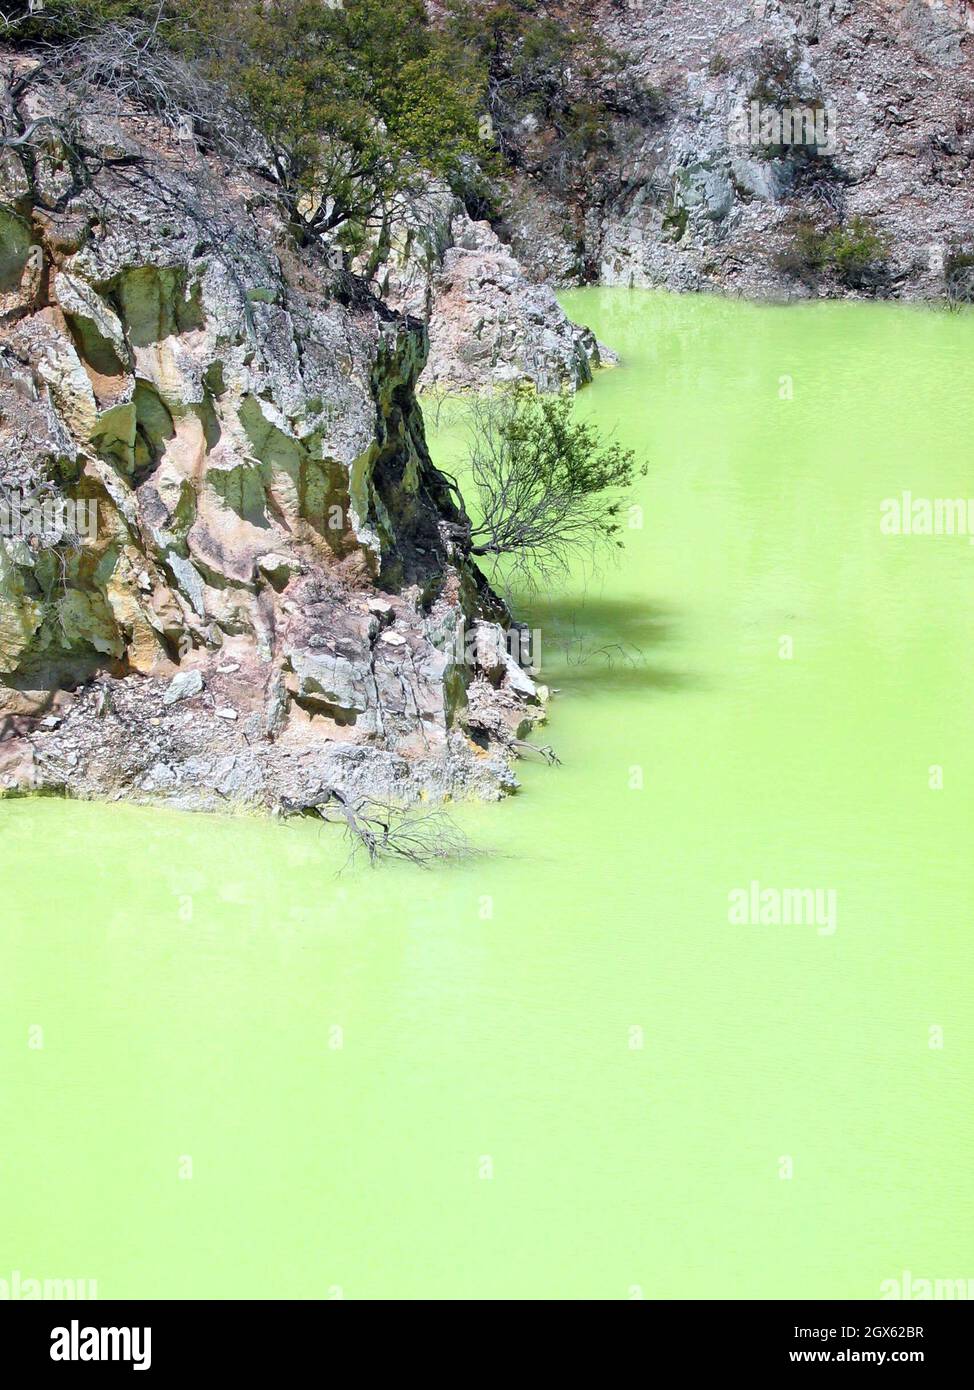 El Devil's Bath, también conocido como Devils Pool, situado en Waiotapu a lo largo de la zona volcánica de Taupo, muestra química geotérmica con su azufre y sales ferrosas creando una piscina verde neón. La zona, situada en la Isla Norte de Nueva Zelanda, ha sido una reserva escénica protegida desde 1931. Foto de stock